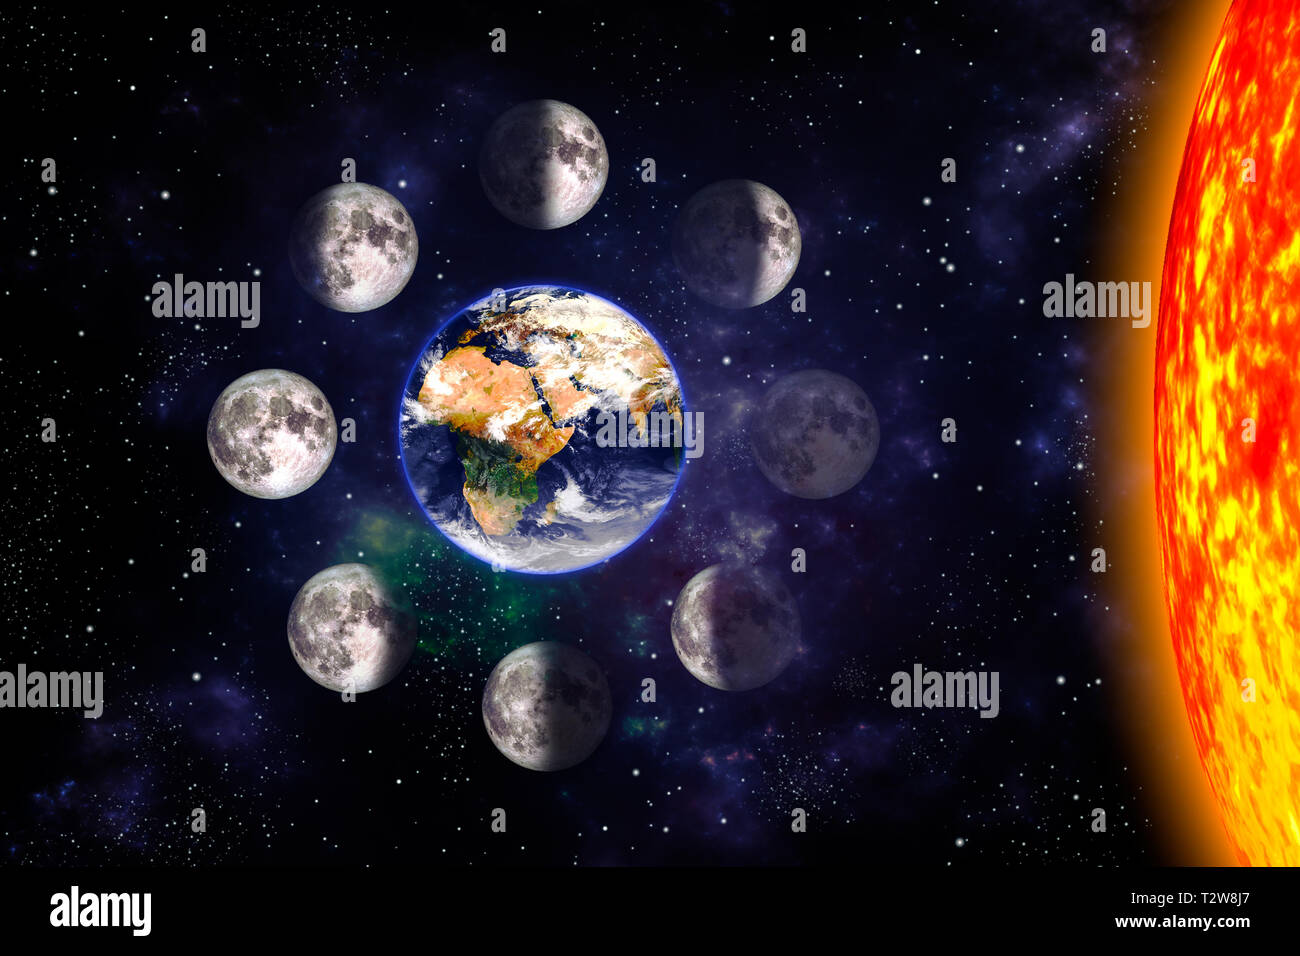 Mond oder Mondphasen Poster. Die acht Schritte des Mondzyklus um die Erde. Raum Hintergrund. 3D-Render Abbildung ohne Text. Erdoberfläche tex Stockfoto